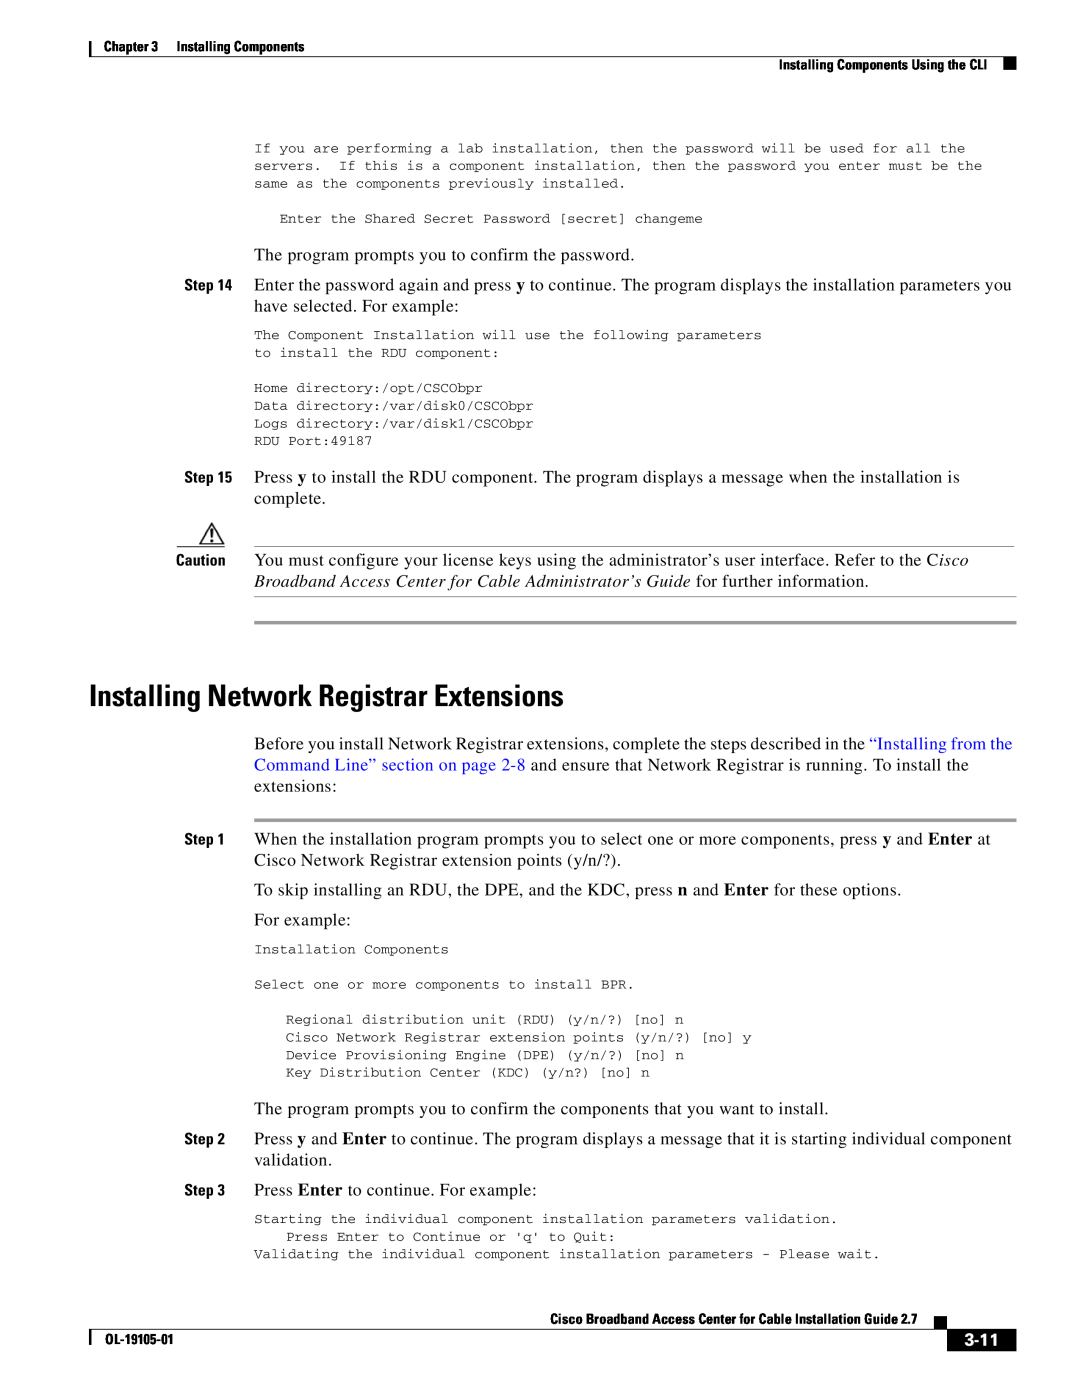 Cisco Systems Broadband Access Center manual Installing Network Registrar Extensions, 3-11 